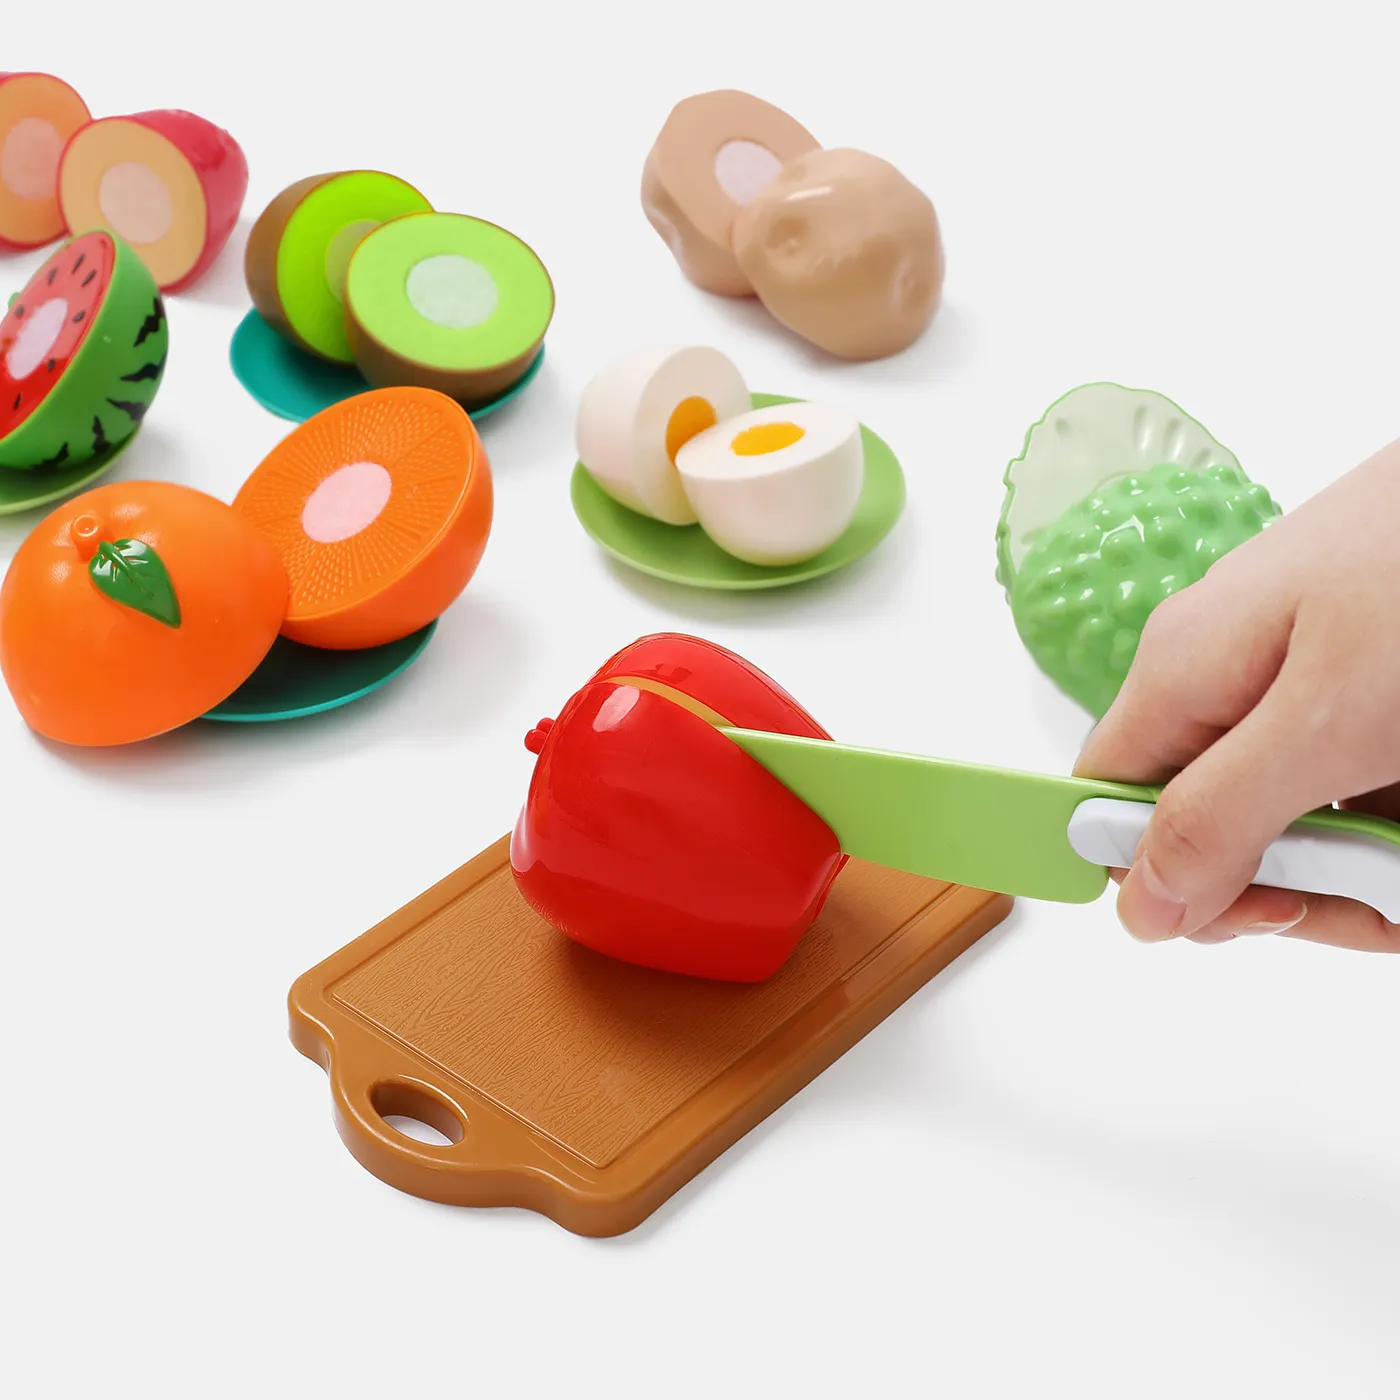 16 件裝不含雙酚 A 的塑料切割遊戲食物玩具兒童可切割水果蔬菜套裝，帶刀具、切菜板和盤子（刀具顏色隨機）